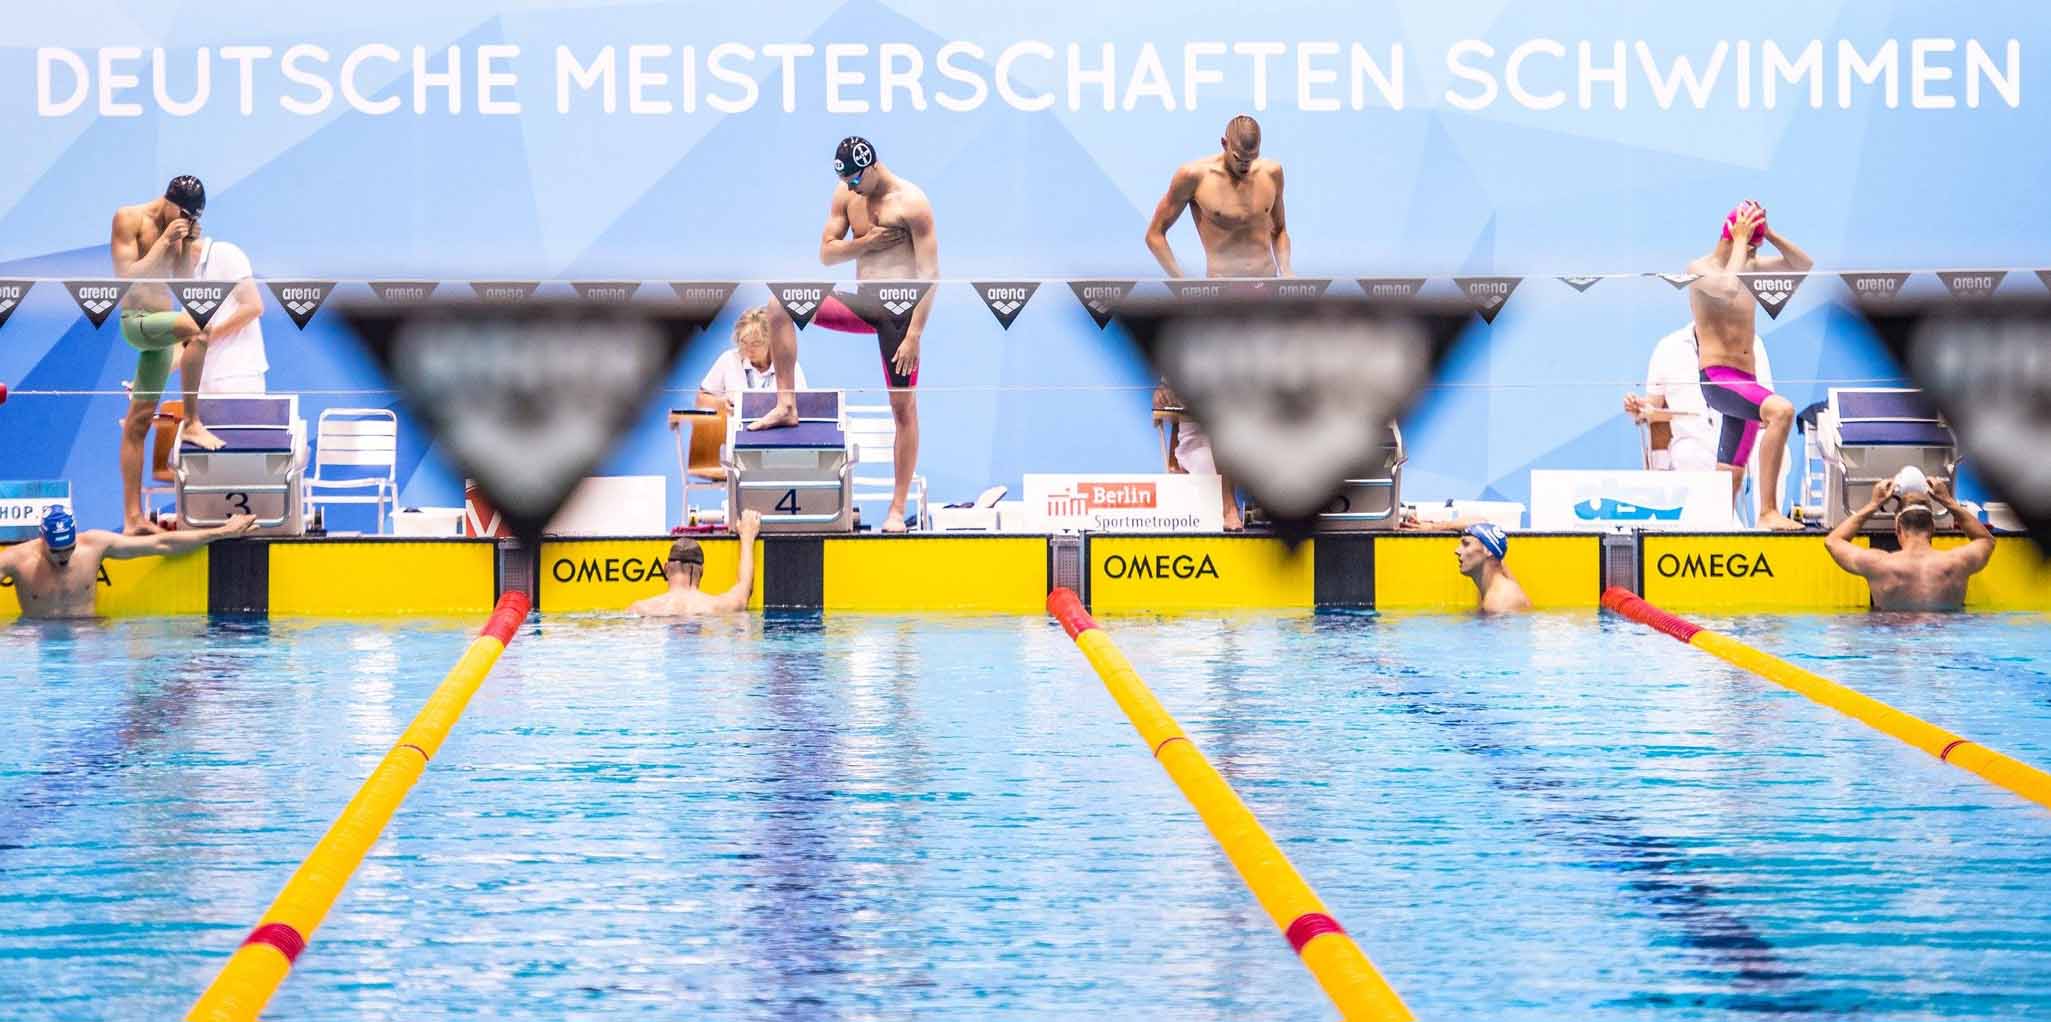 Schwimm-DM 2022 Ausschreibung der Deutschen Meisterschaften online